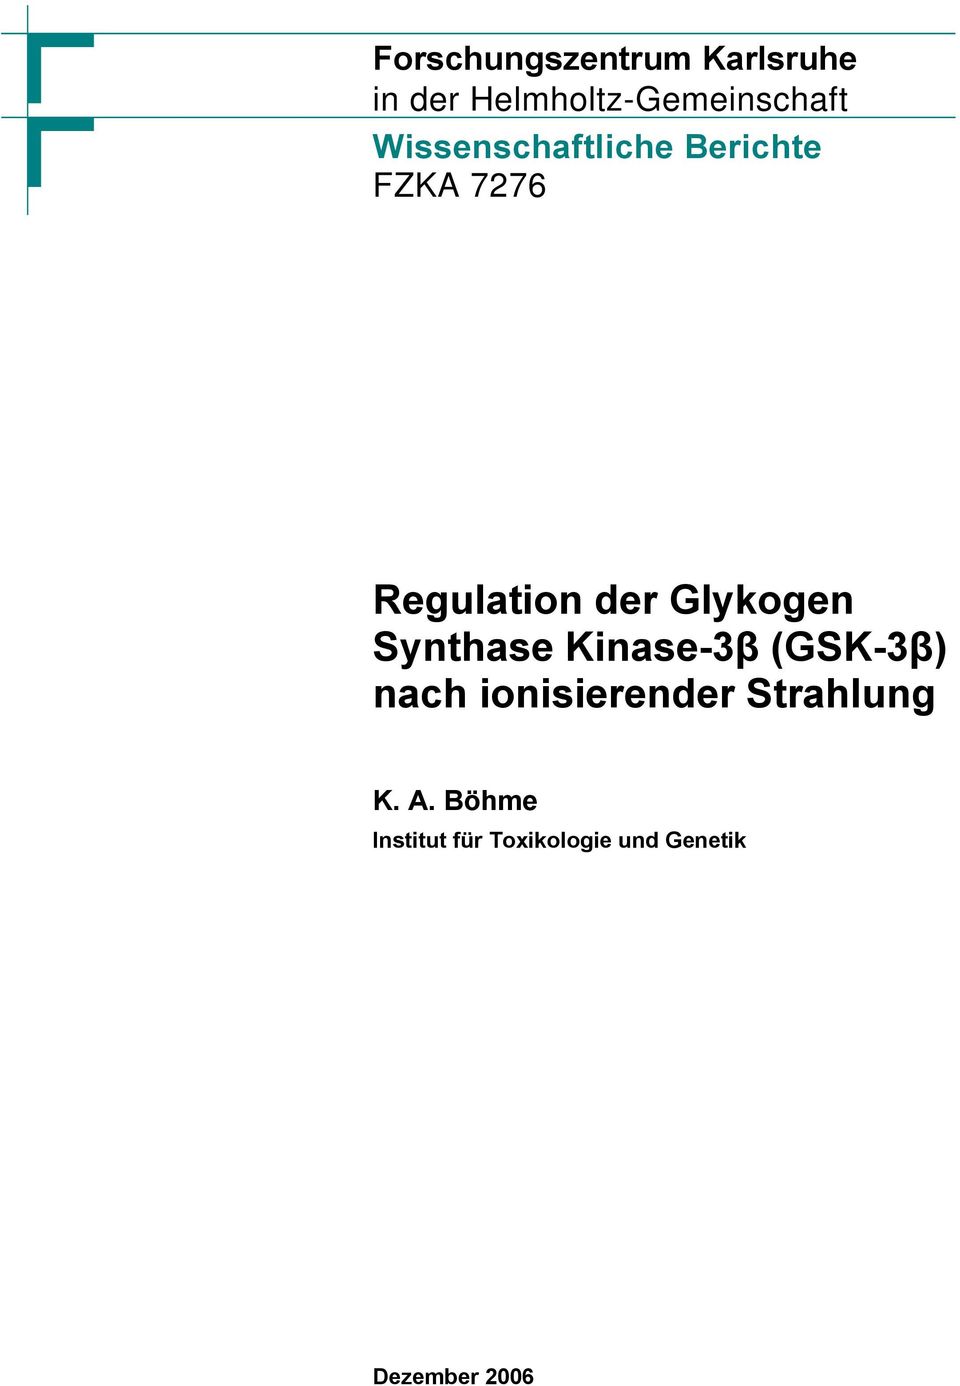 Glykogen Synthase Kinase-3β (GSK-3β) nach ionisierender